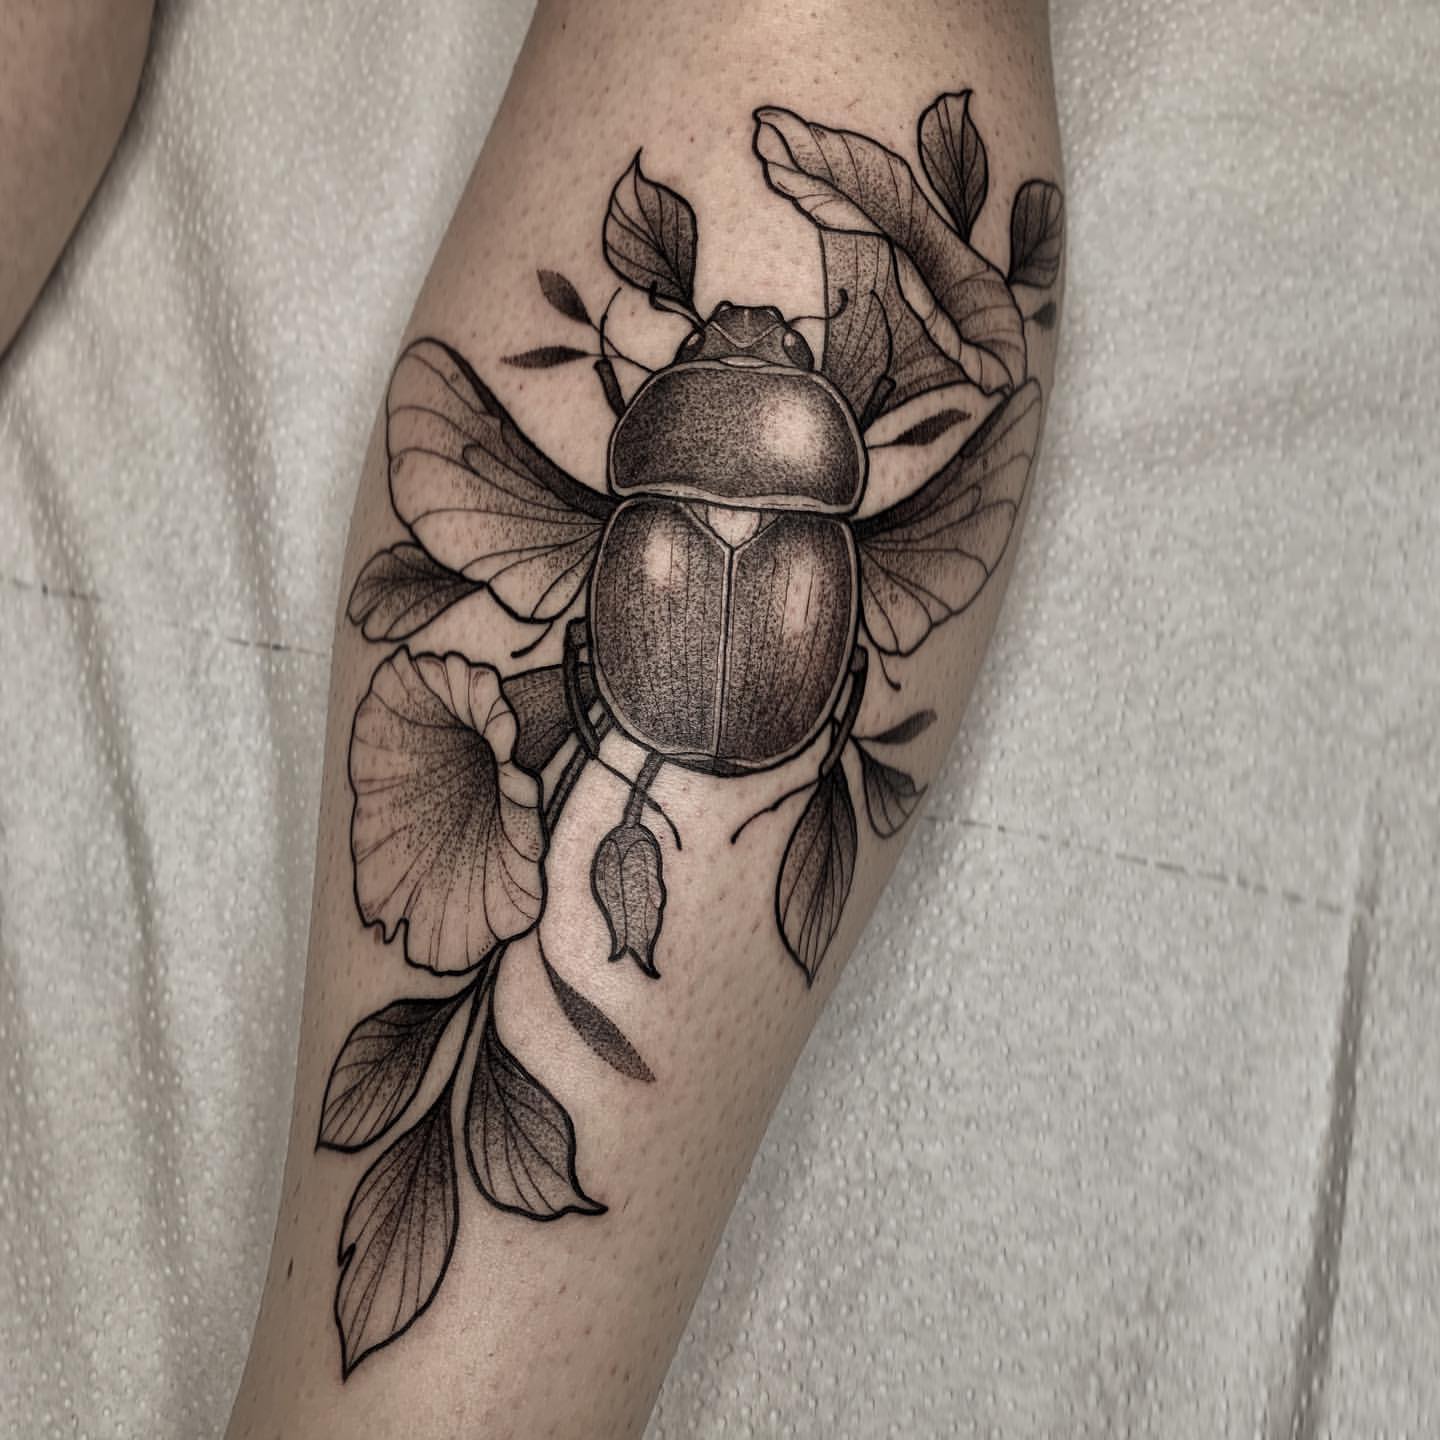 Scarab/Beetle Tattoo Ideas 29